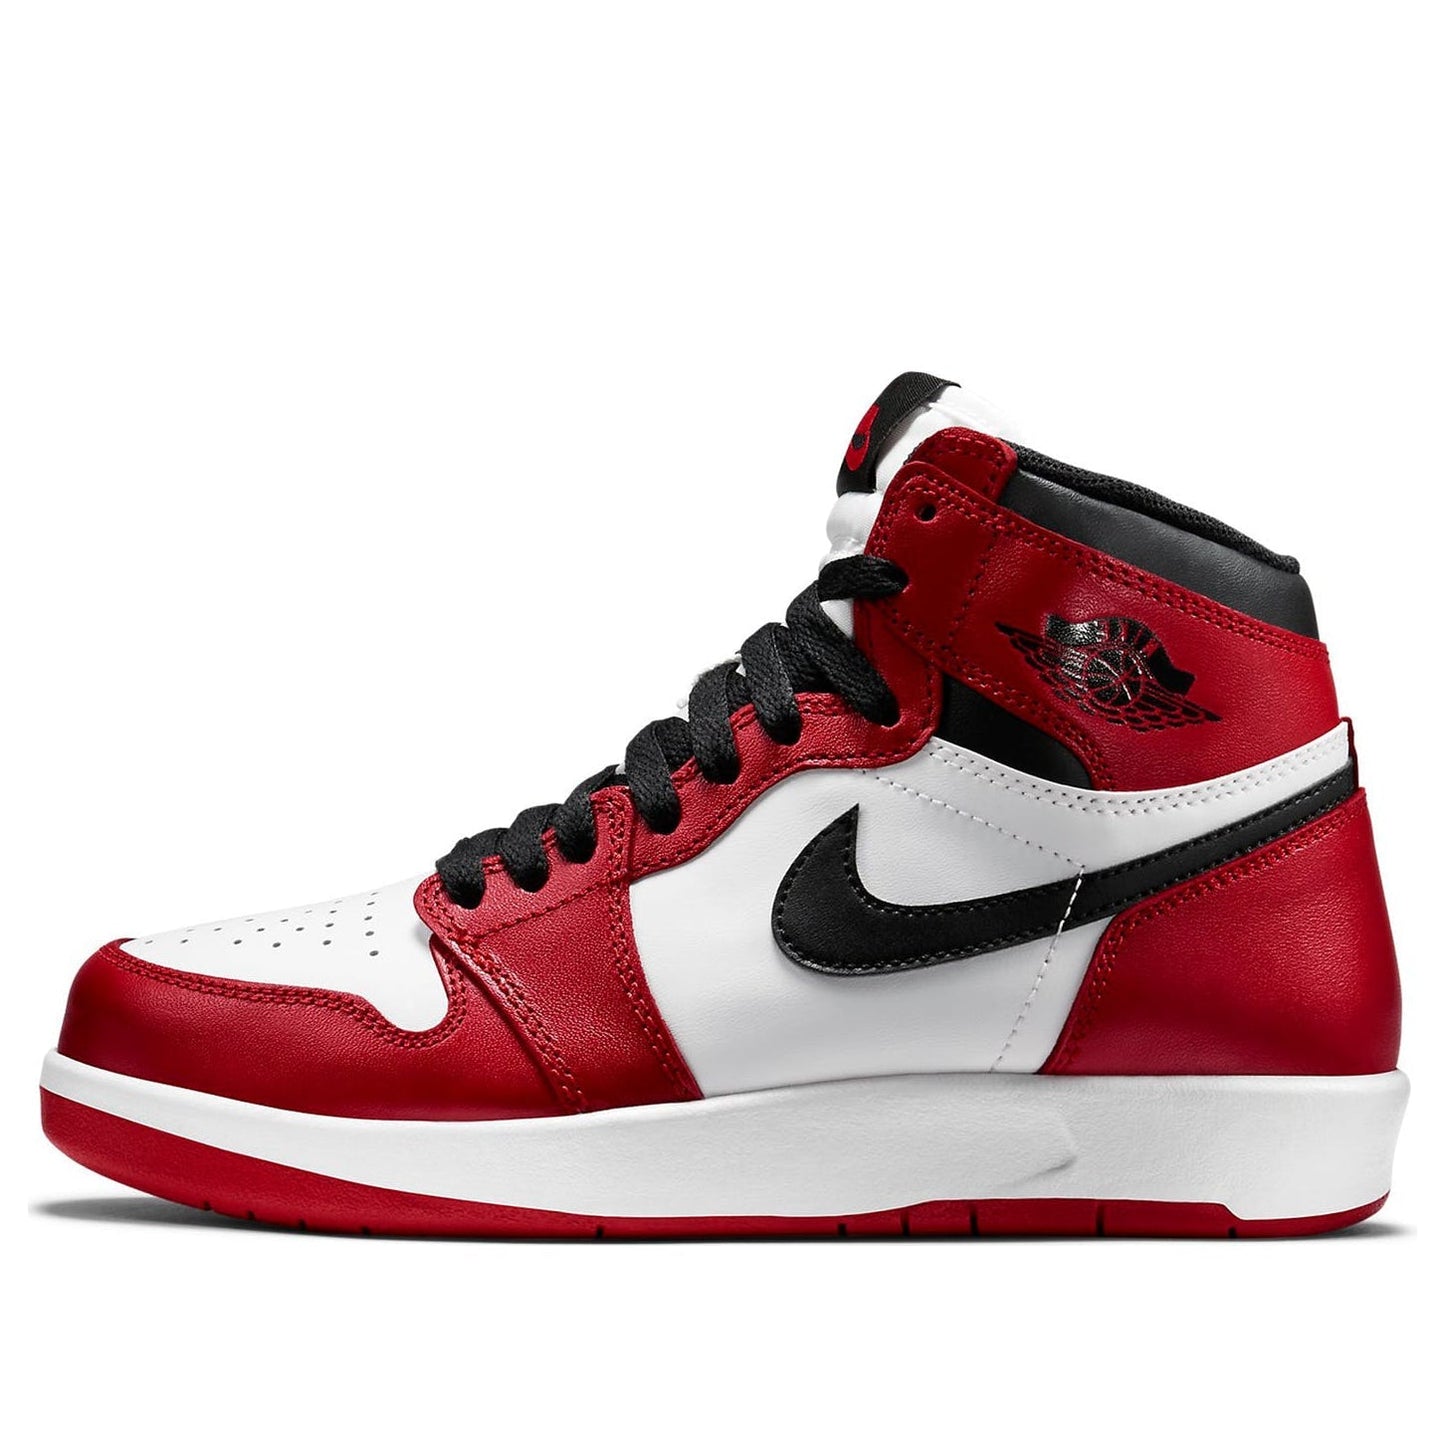 Air Jordan 1 High'The Return' BG Varsity Red/Black-White 768862-601